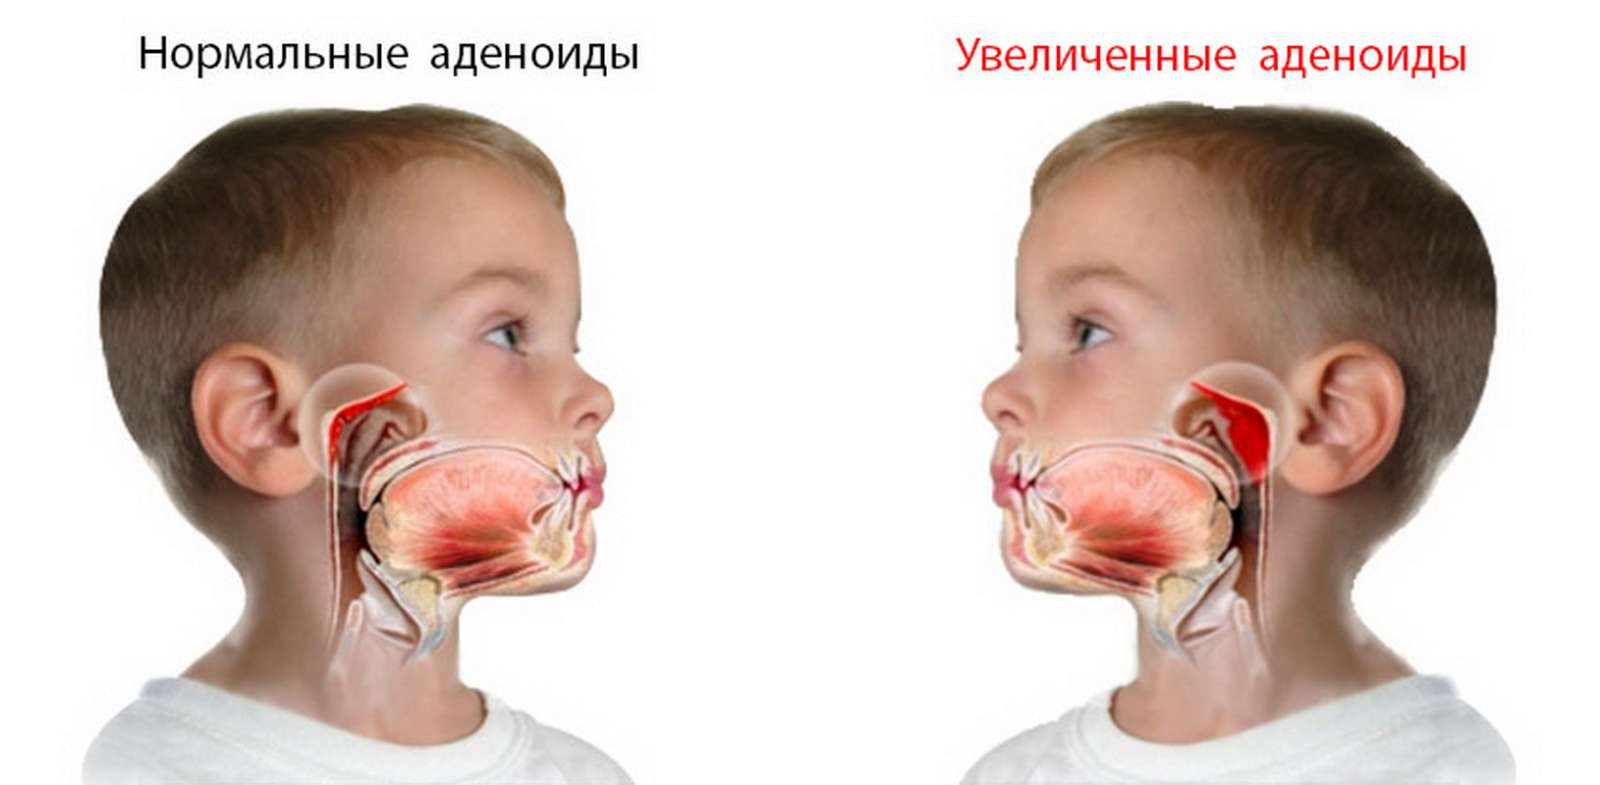 Ингаляции интерфероном при аденоидах - Педиатрия - - Здоровье hb-crm.ru